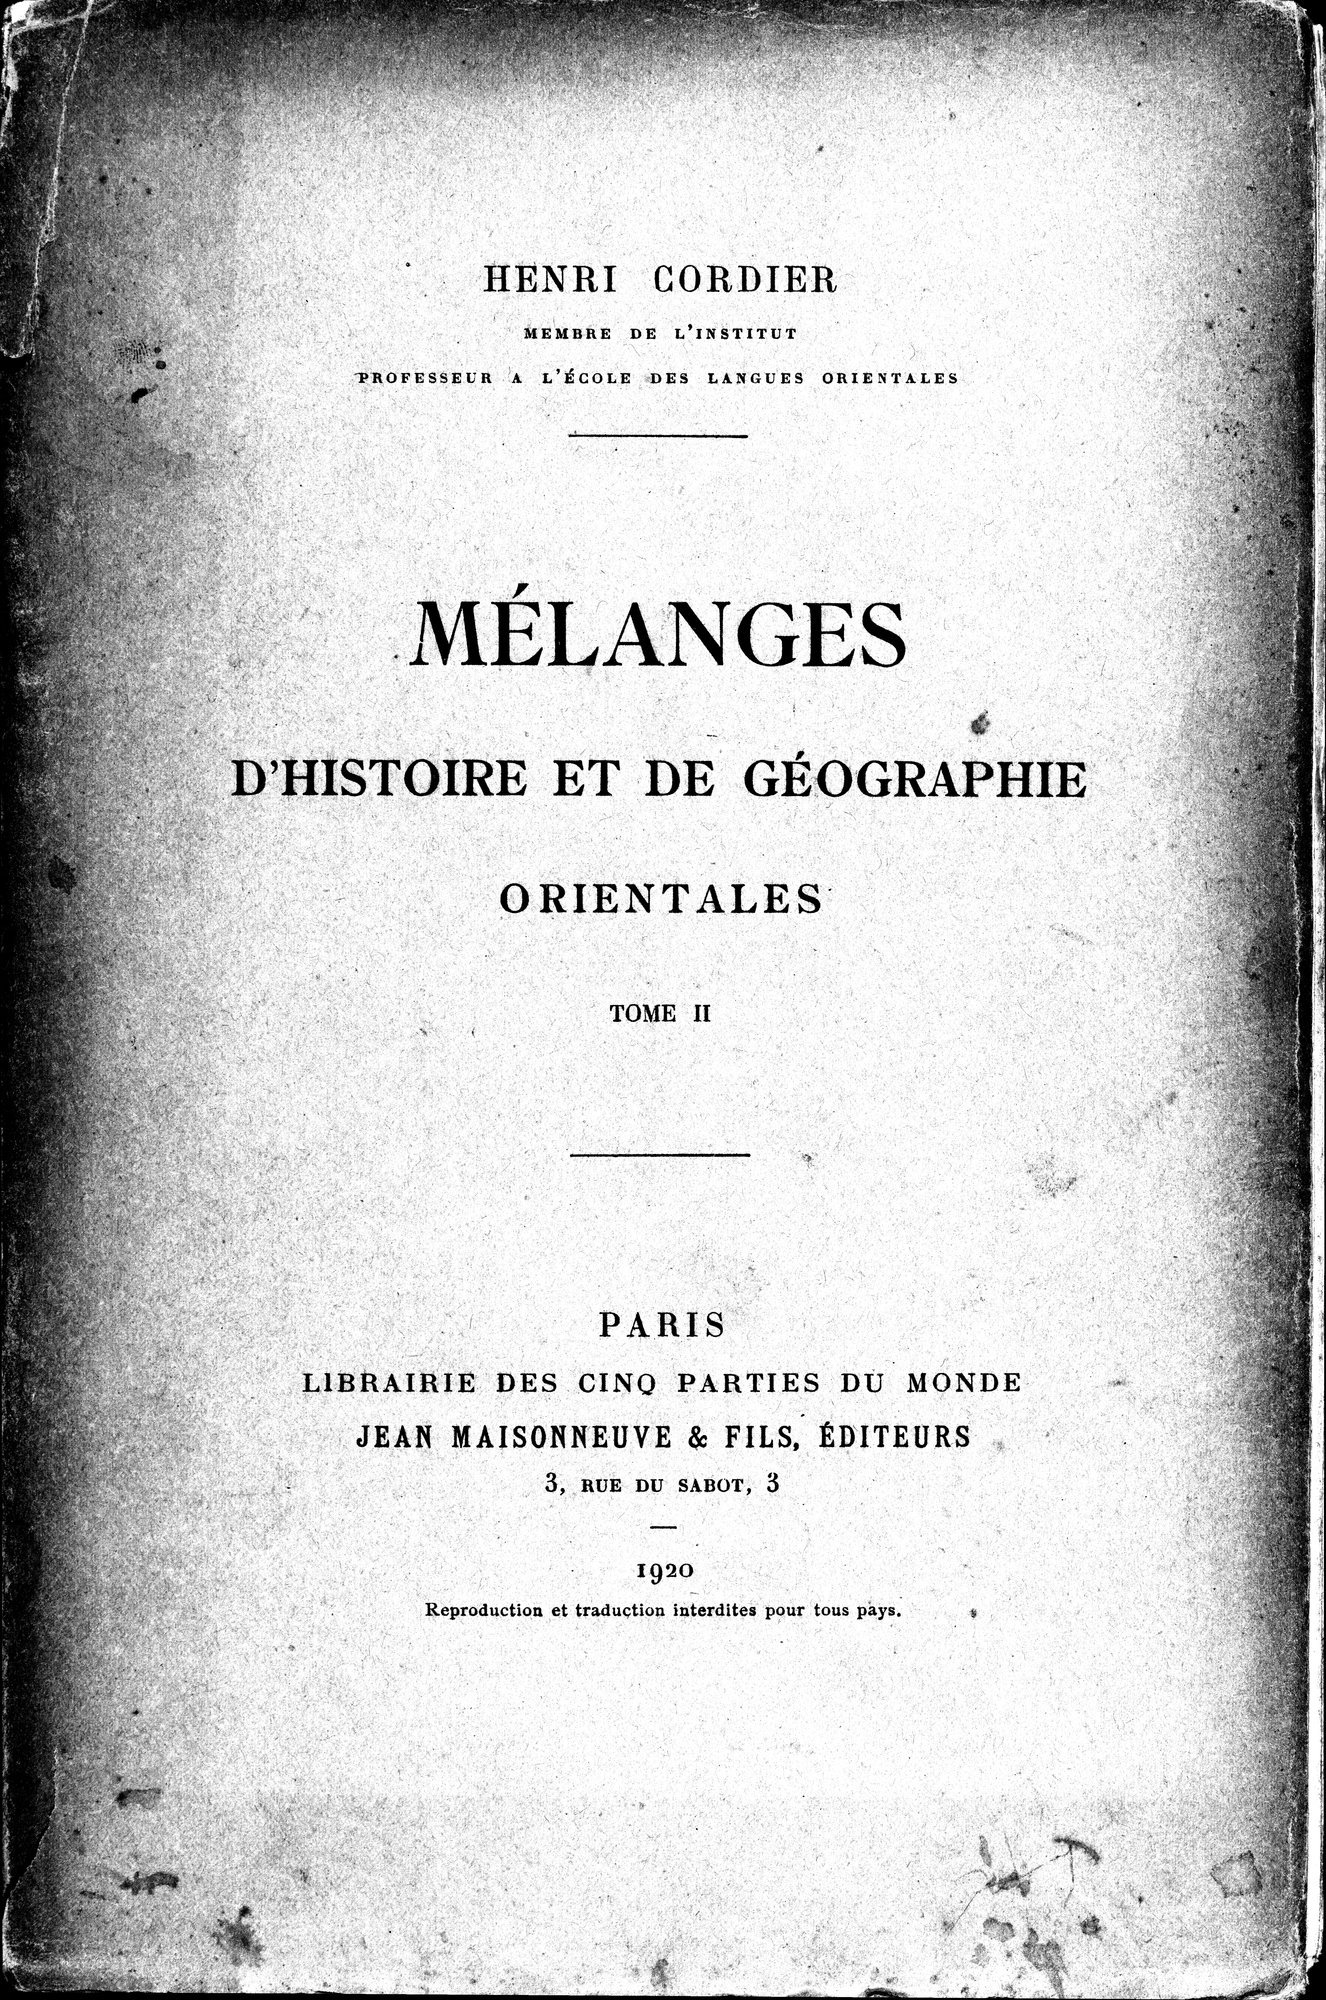 Mélanges d'Histoire et de Géographie Orientales : vol.2 / Page 1 (Grayscale High Resolution Image)